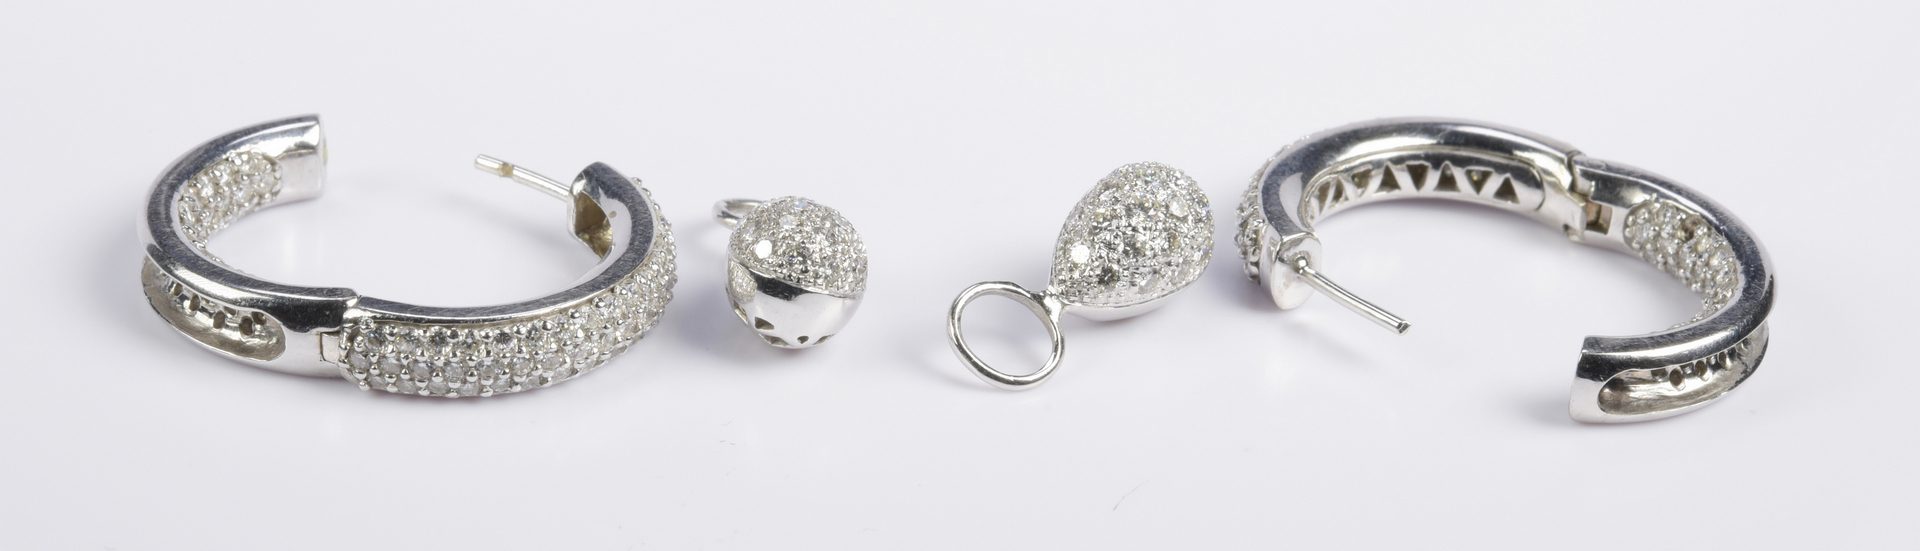 Lot 77: Diamond Hoop Earrings with Drops, 14K & 18K